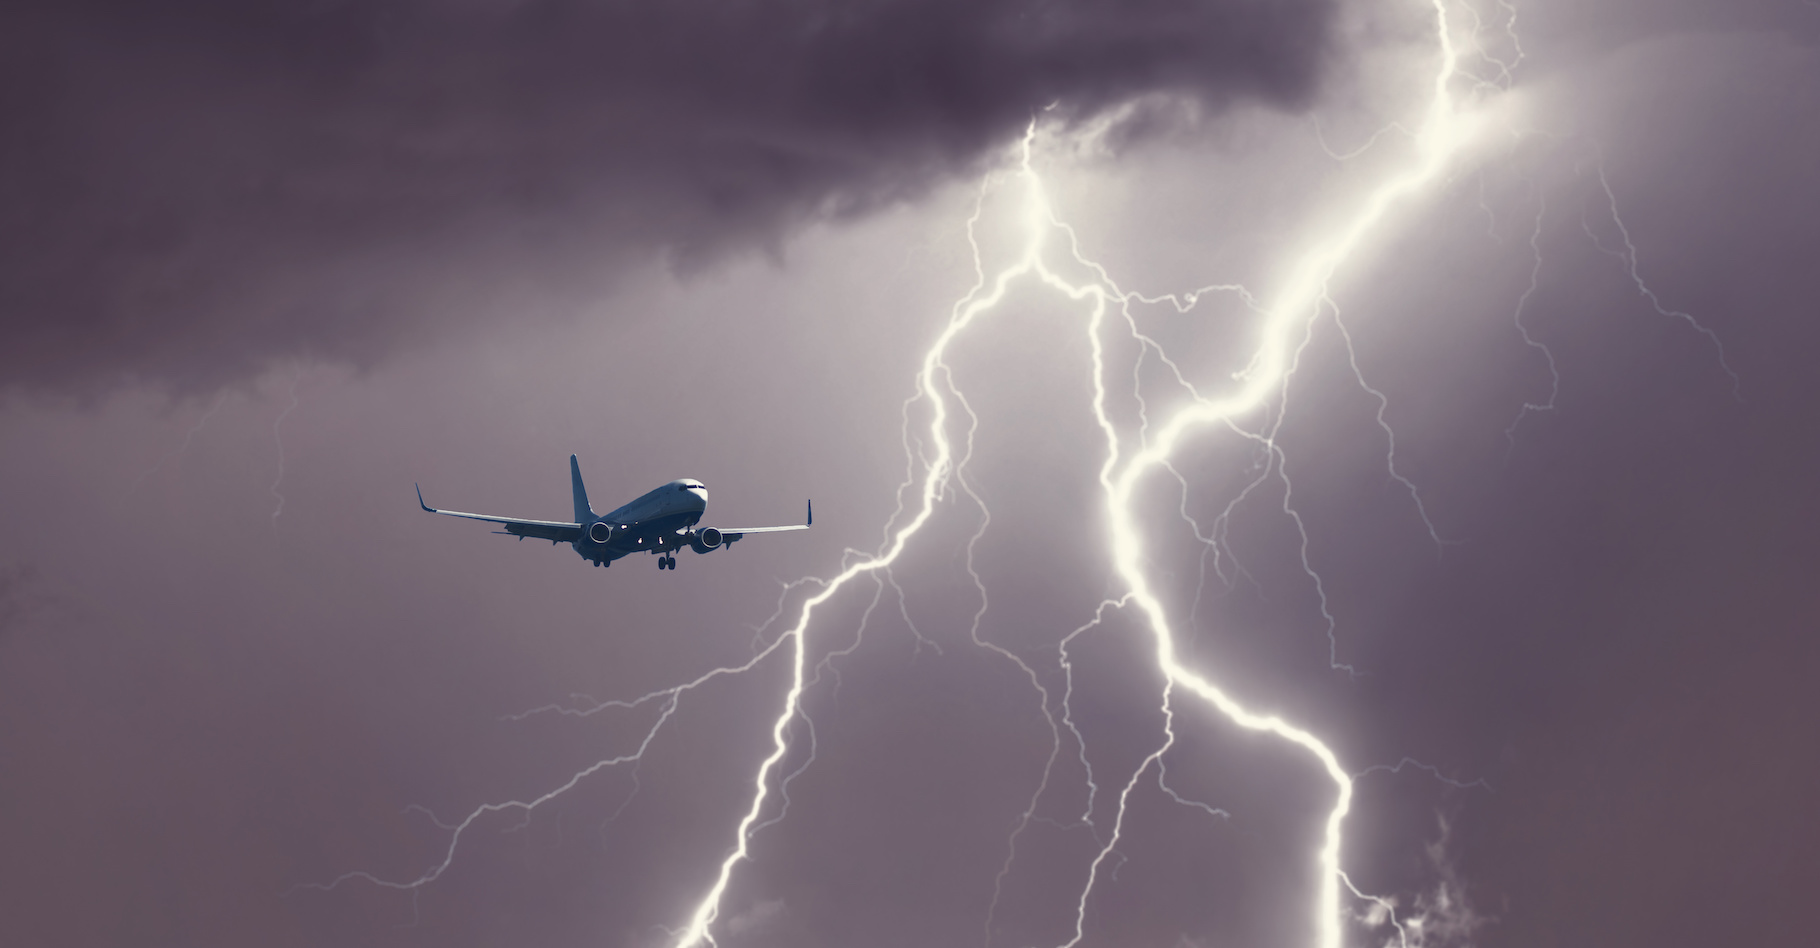 Des chercheurs de l’université d’Orléans estiment que des « éclairs noirs », comprenez, des flashs de rayons gamma, pourraient toucher les passagers des avions en vol. © flowertiare, Adobe Stock